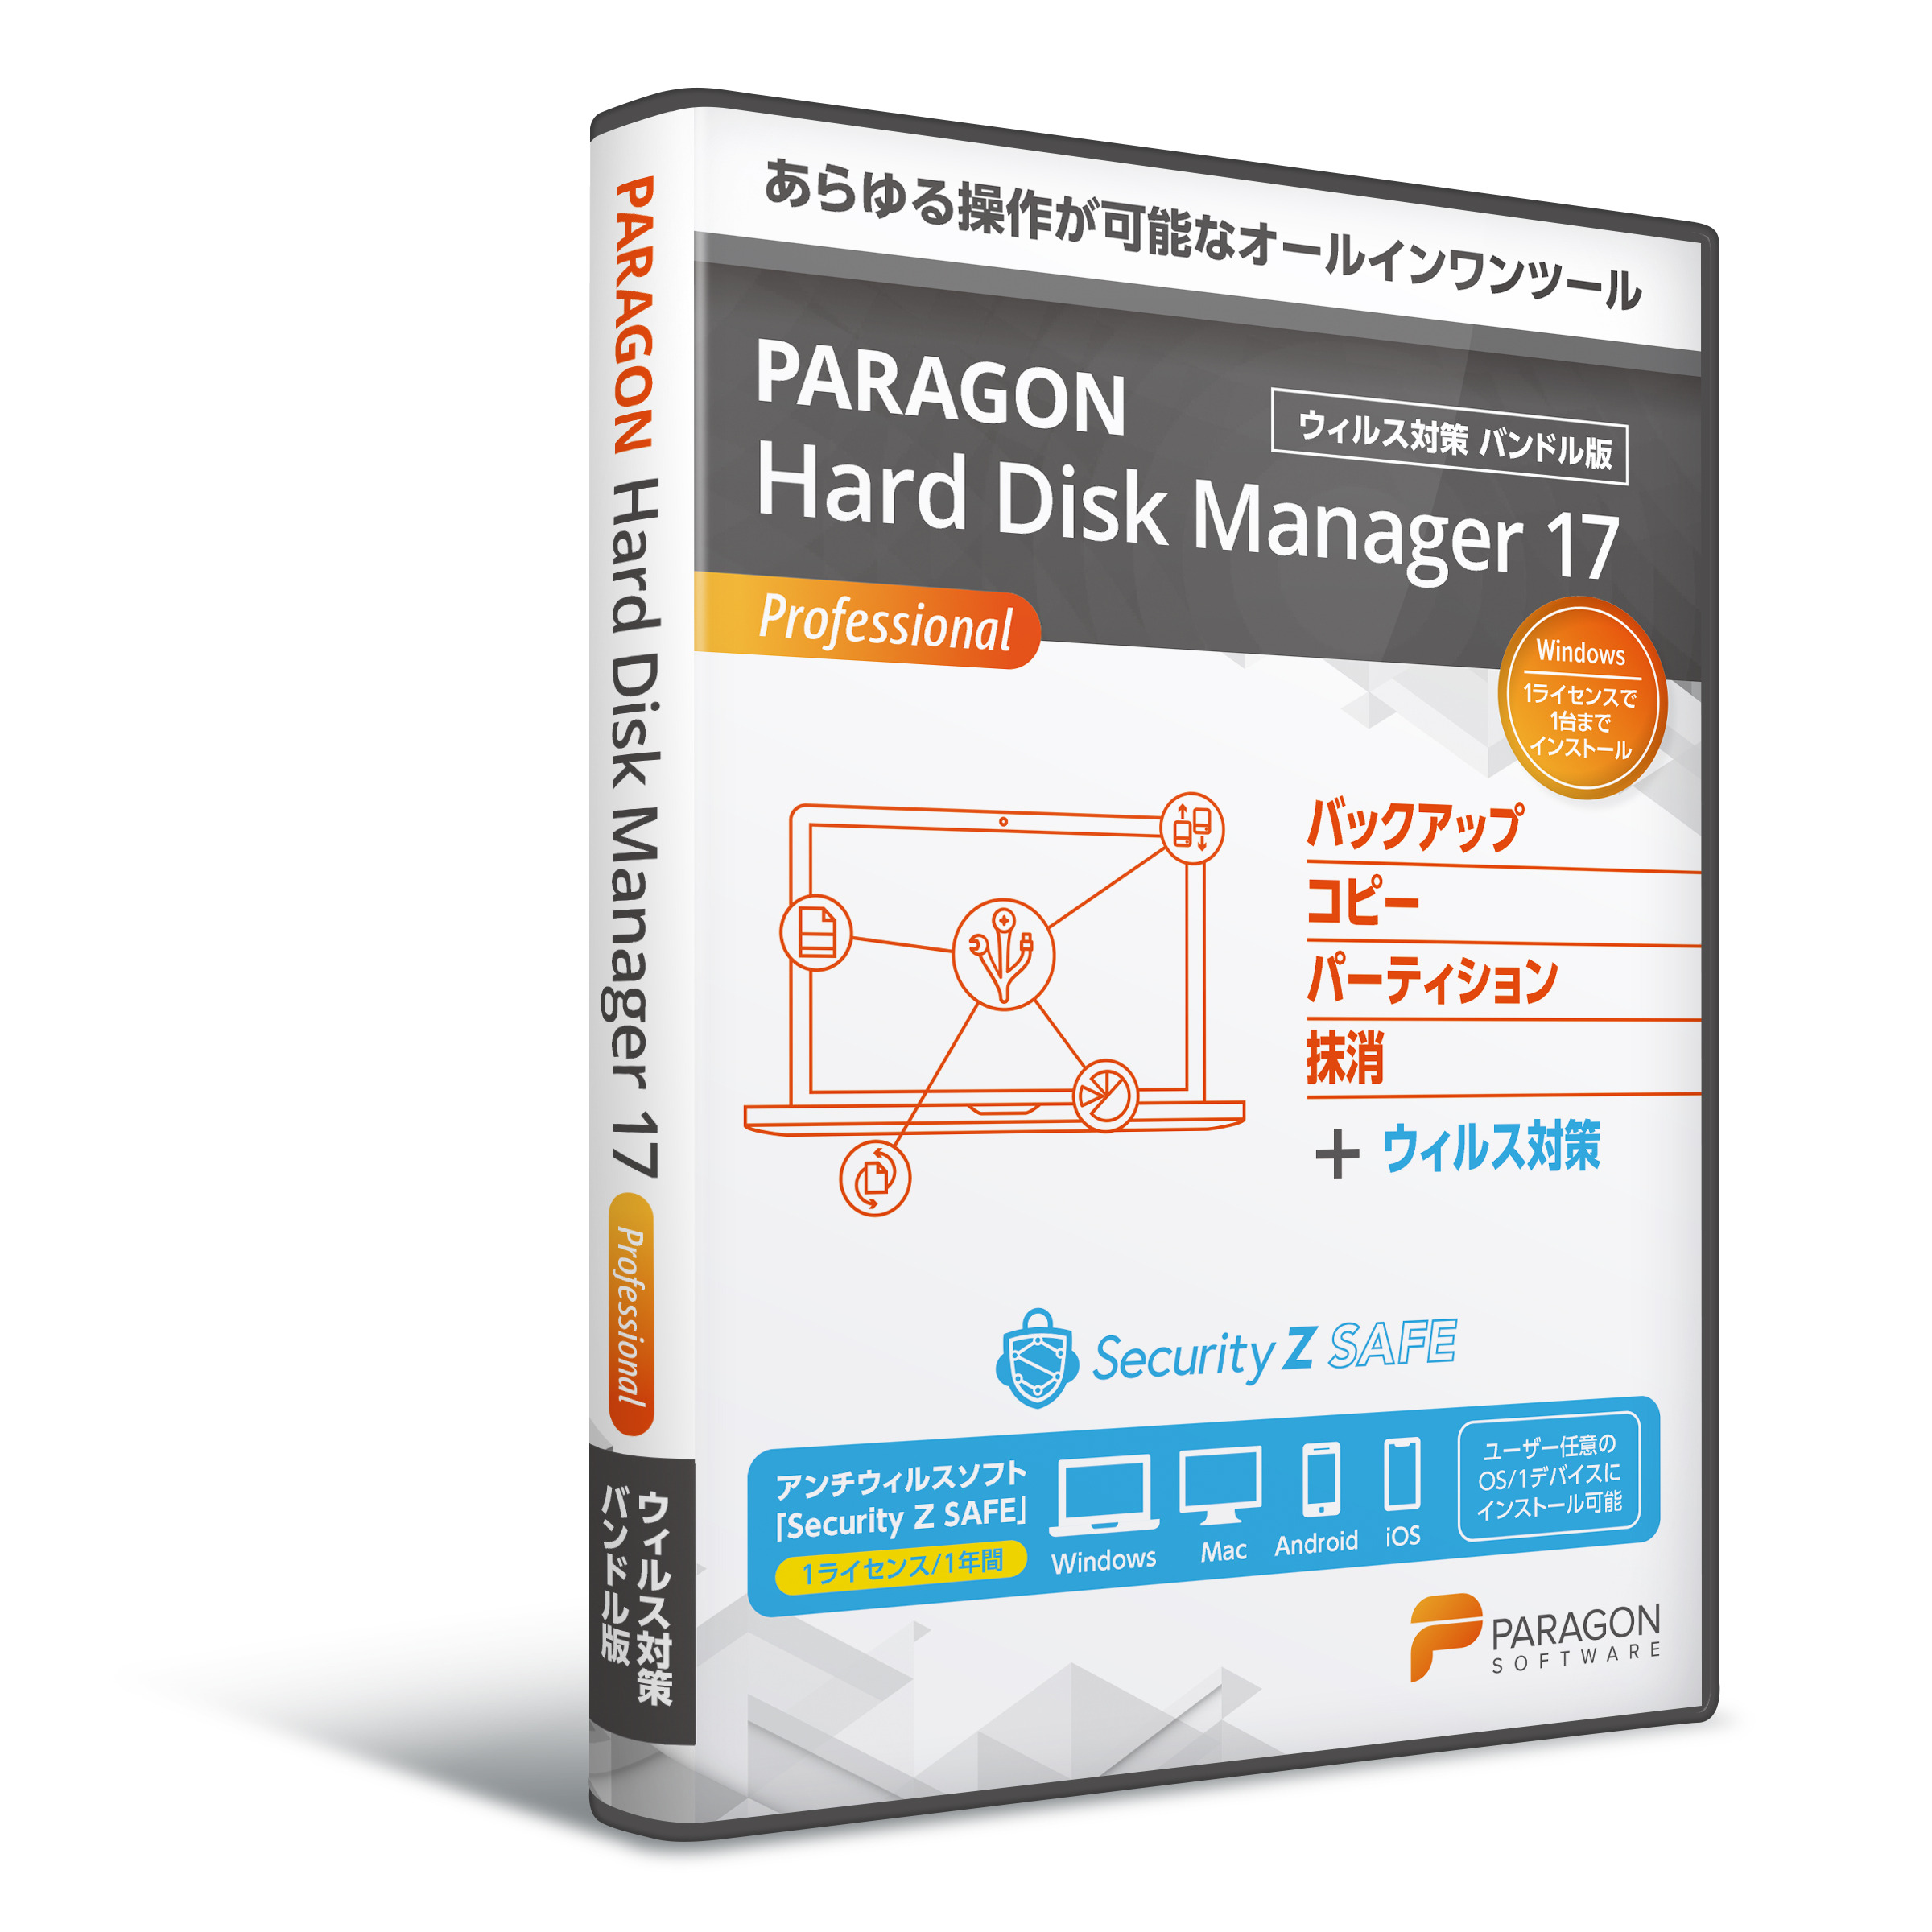 パラゴンソフトウェア Paragon Hard Disk Manager 17 ProシングルL+Security Z SAFE※パッケージ版 パラゴンHDM17PROZSAFE返品種別B